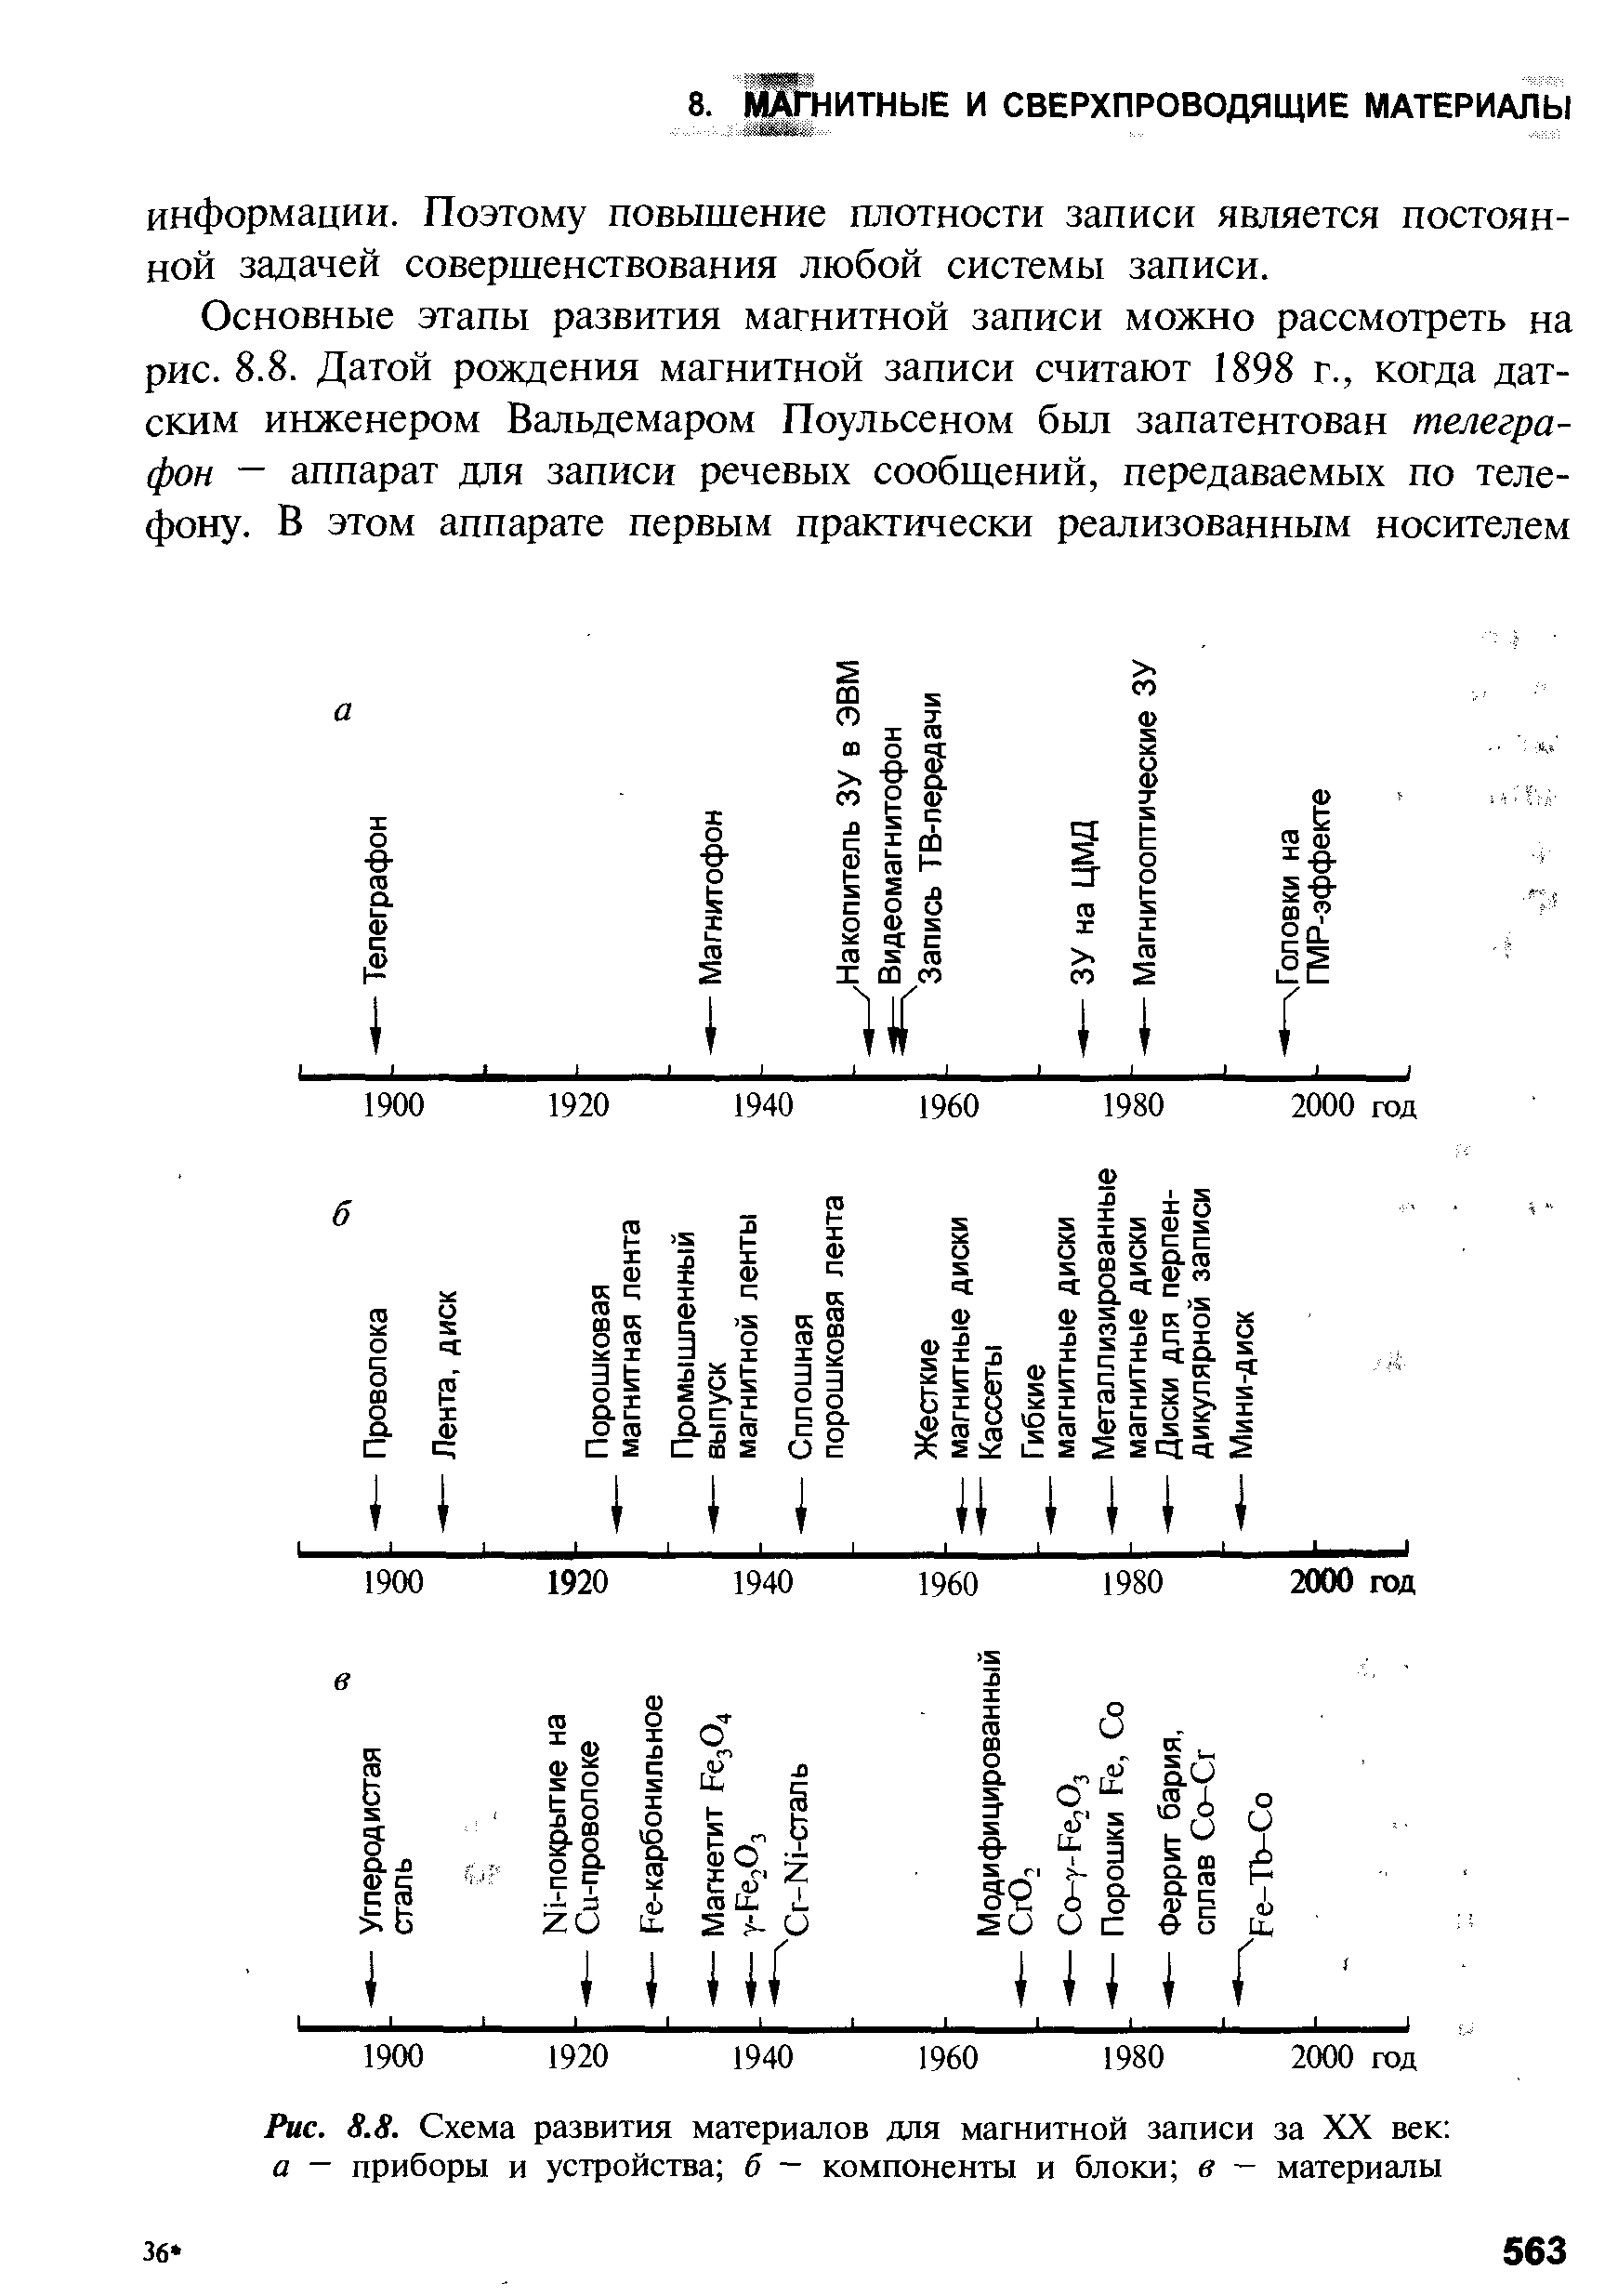 Рис. S.S. Схема развития материалов для магнитной записи за XX век а - приборы и устройства 6 — компоненты и блоки в - материалы
